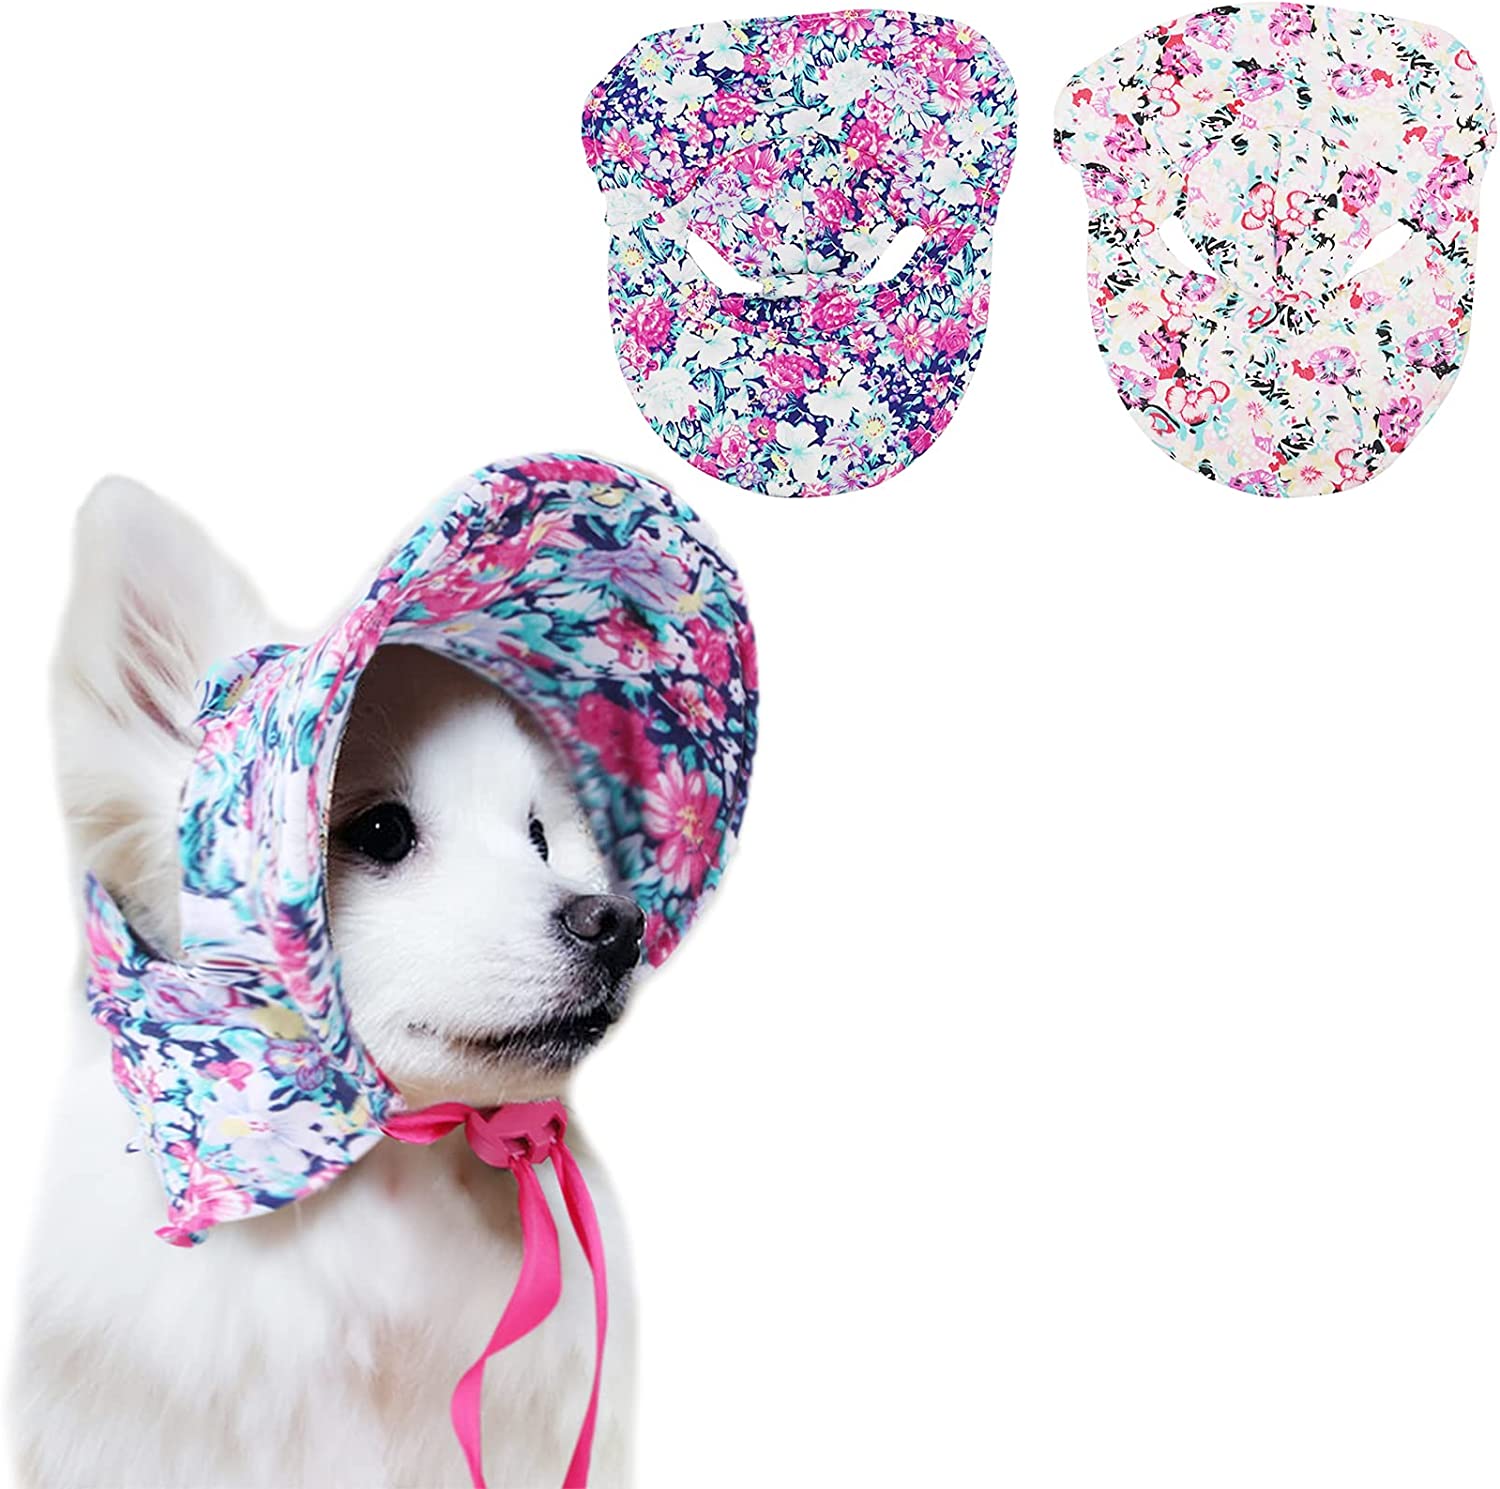 کلاه سگ Toysructin با سوراخ گوش، 2 عدد کلاه آفتابگیر گلدار برای سگ با بند کشی قابل تنظیم